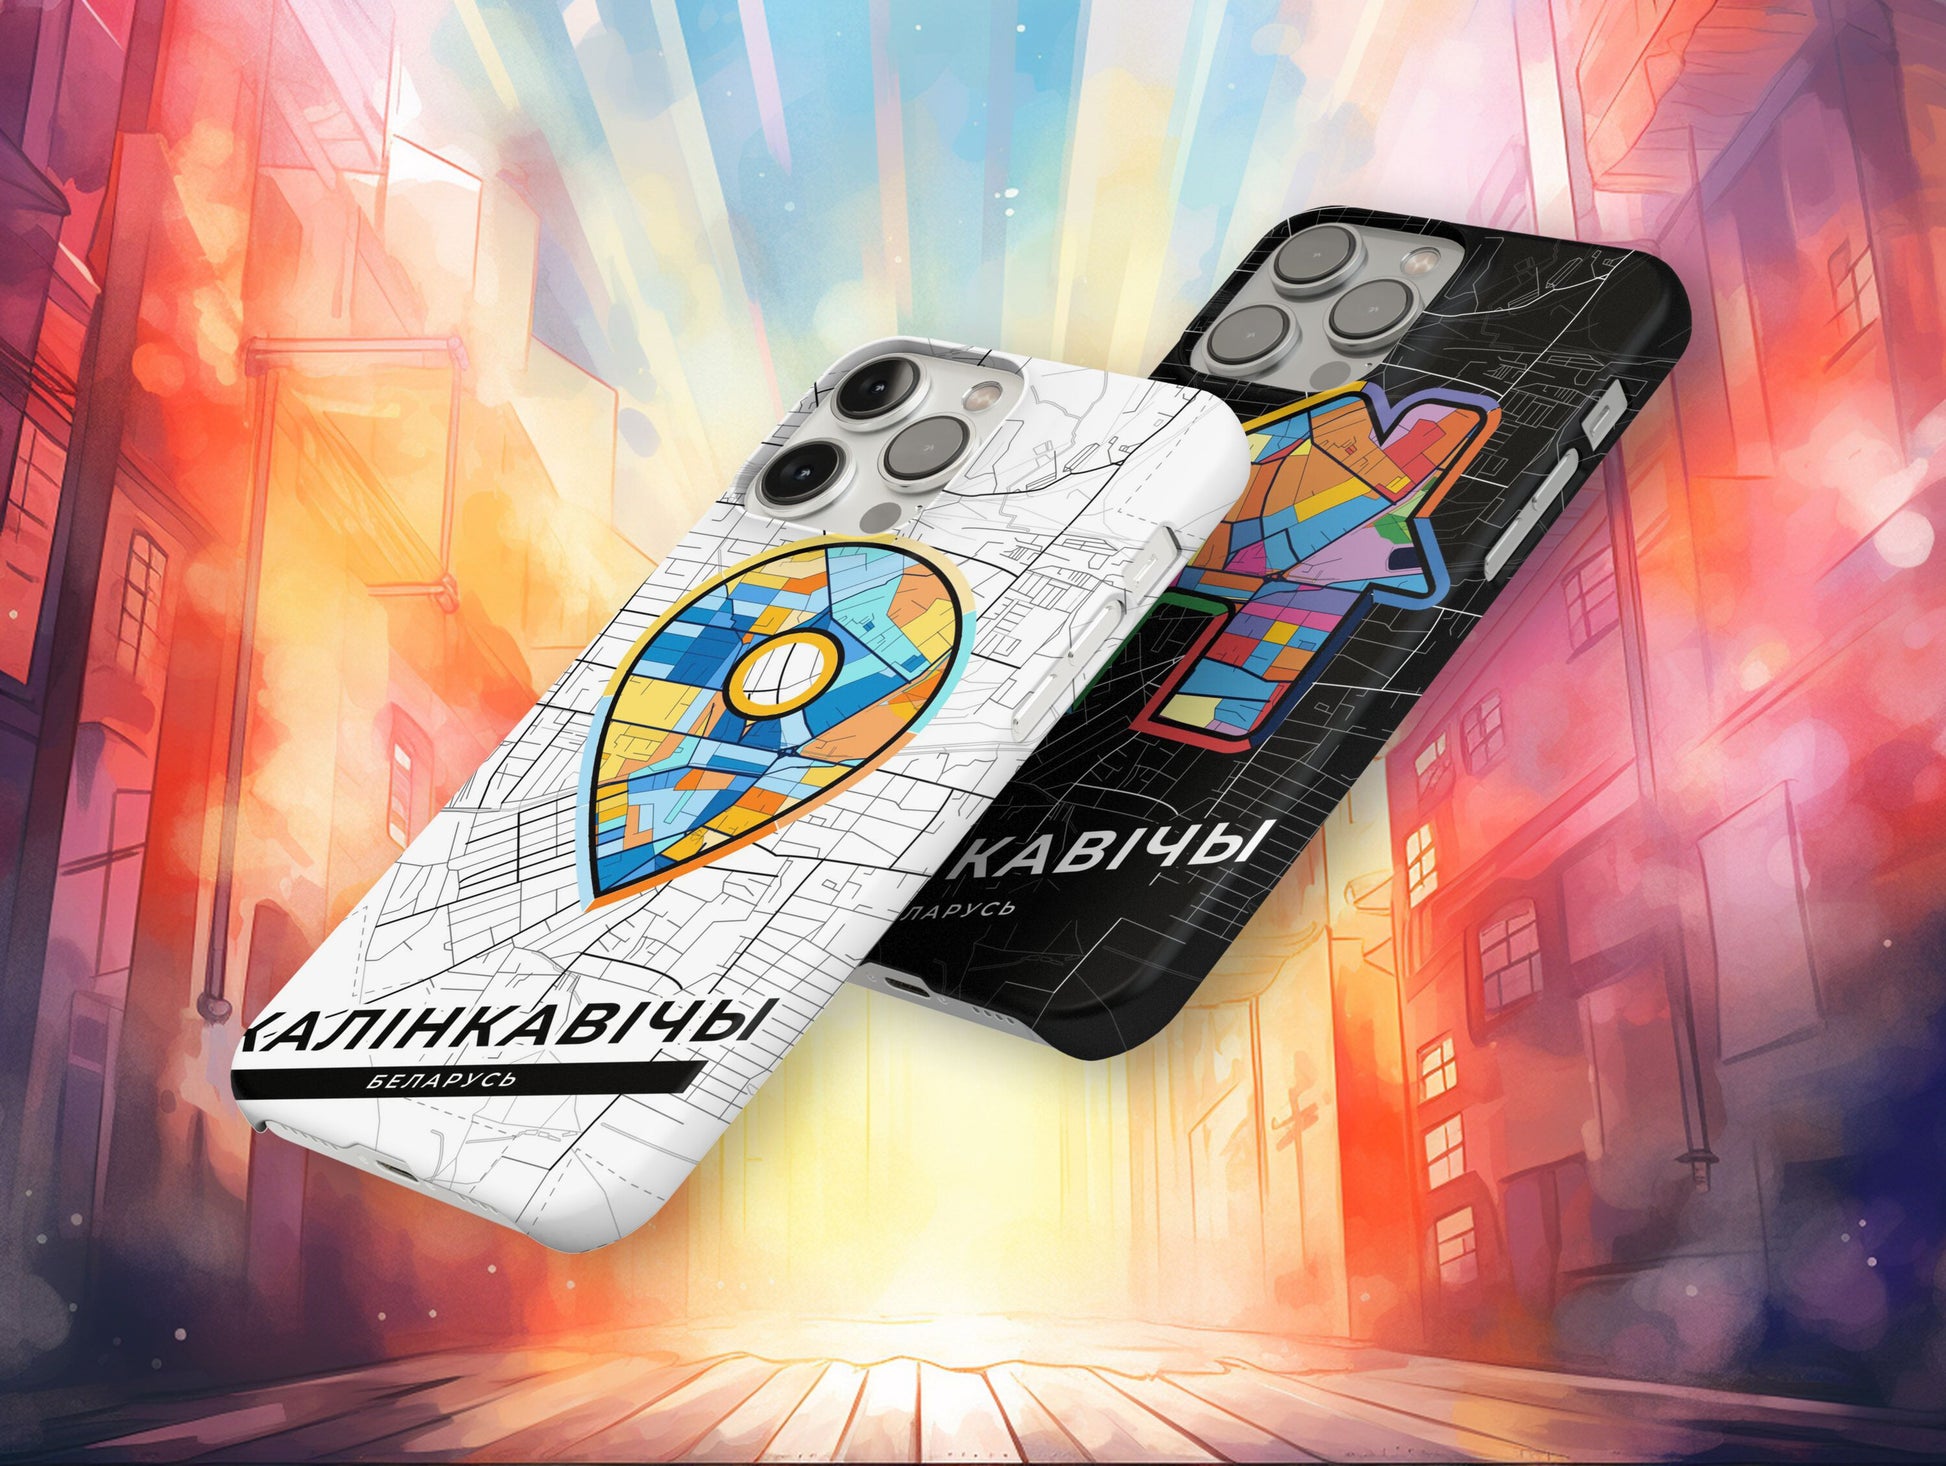 Калінкавічы Беларусь slim phone case with colorful icon